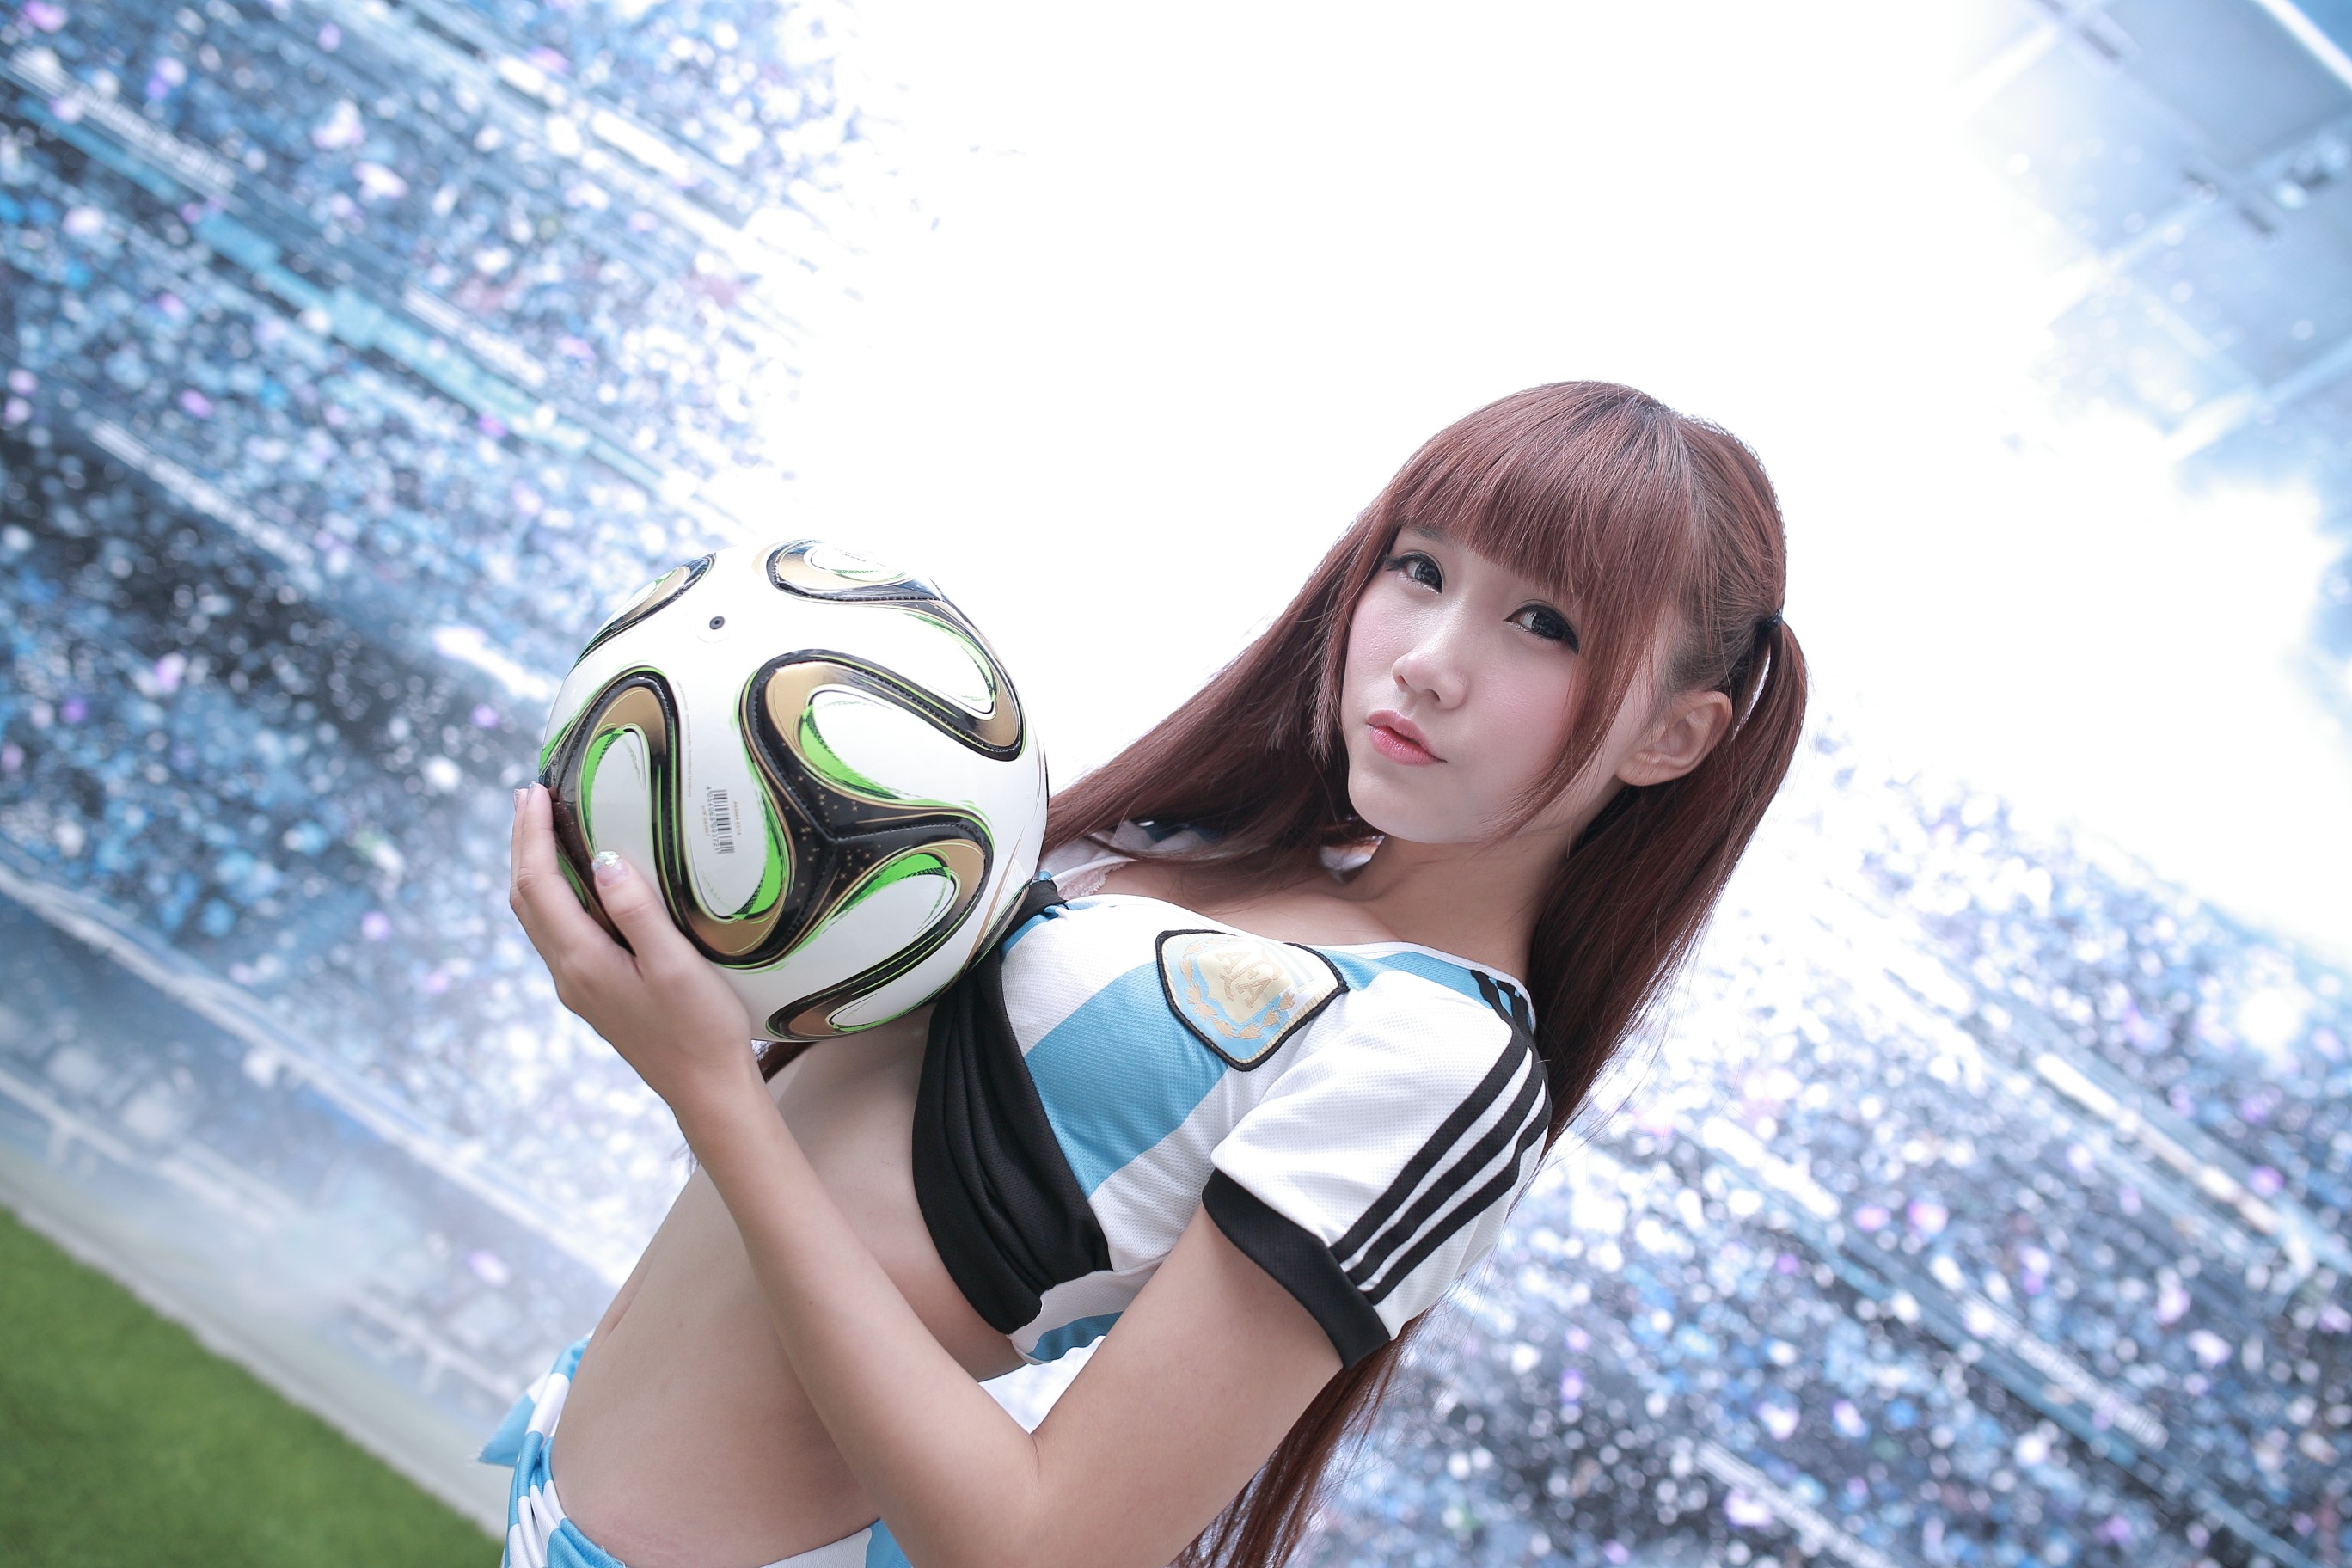 People 2736x1824 auburn hair looking at viewer soccer ball long hair brown eyes Ji Xin Qiao twintails Asian women